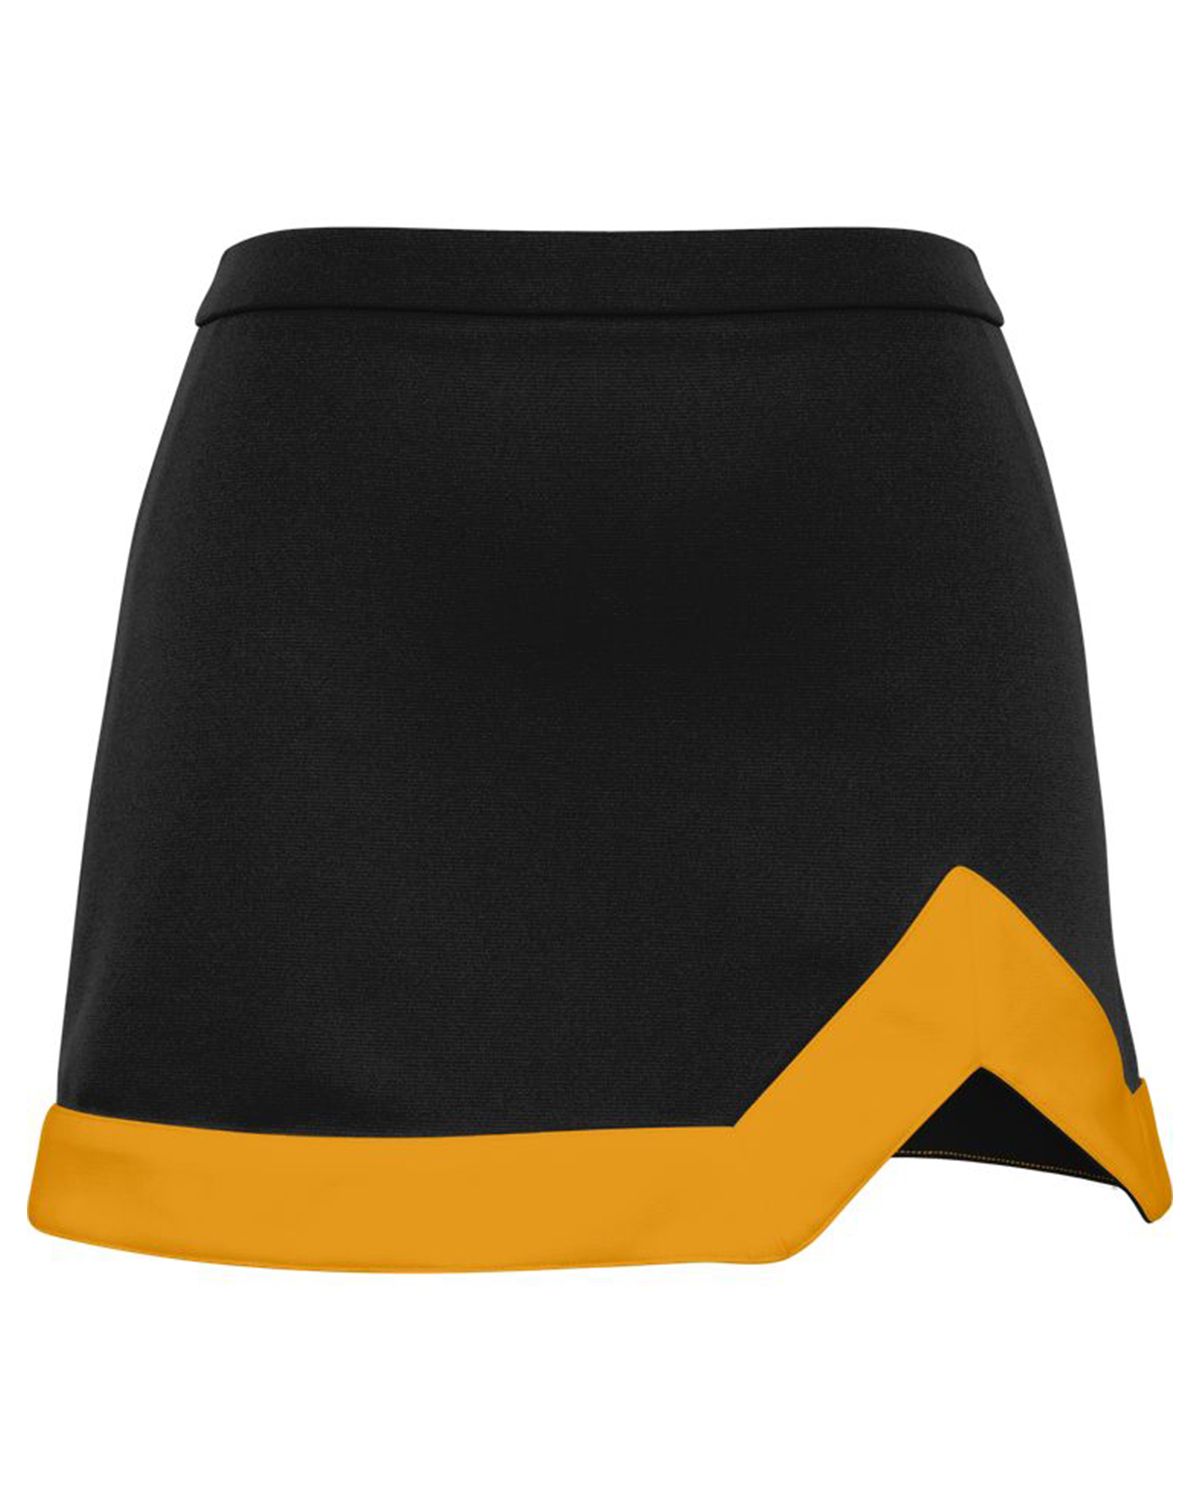 champion skirt yellow